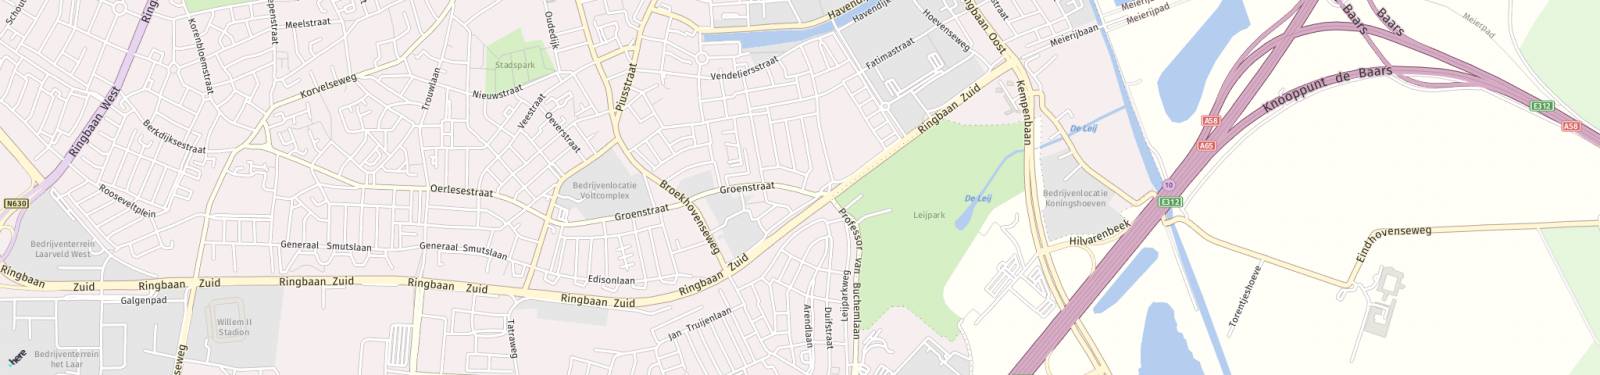 Kaart met locatie Huurwoning Groenstraat 